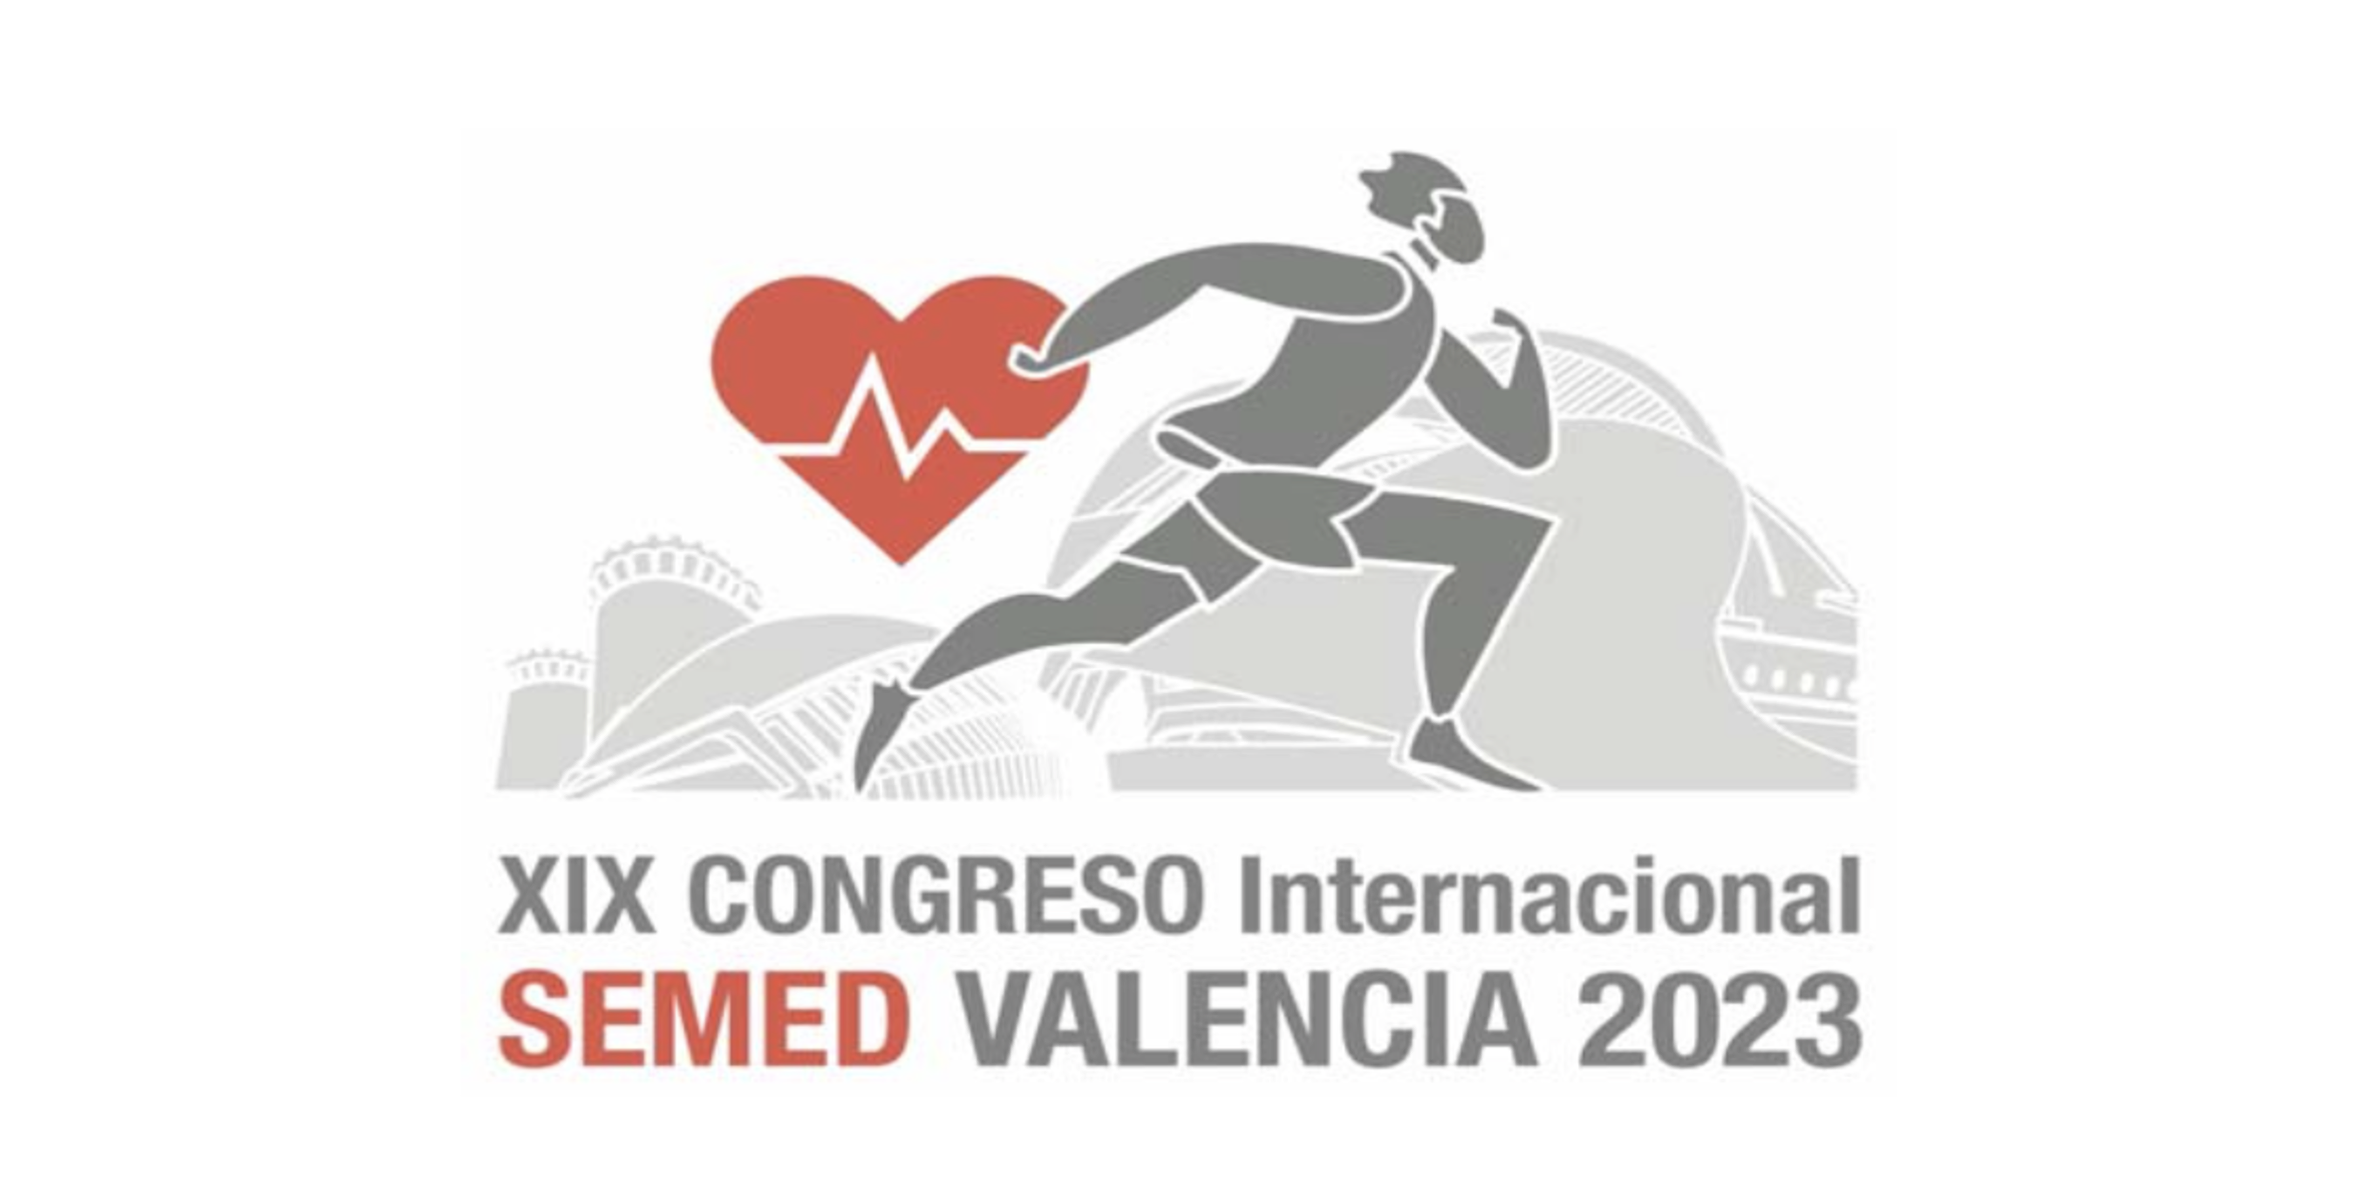 XIX Congreso Internacional de la Sociedad Española de Medicina del Deporte 2023